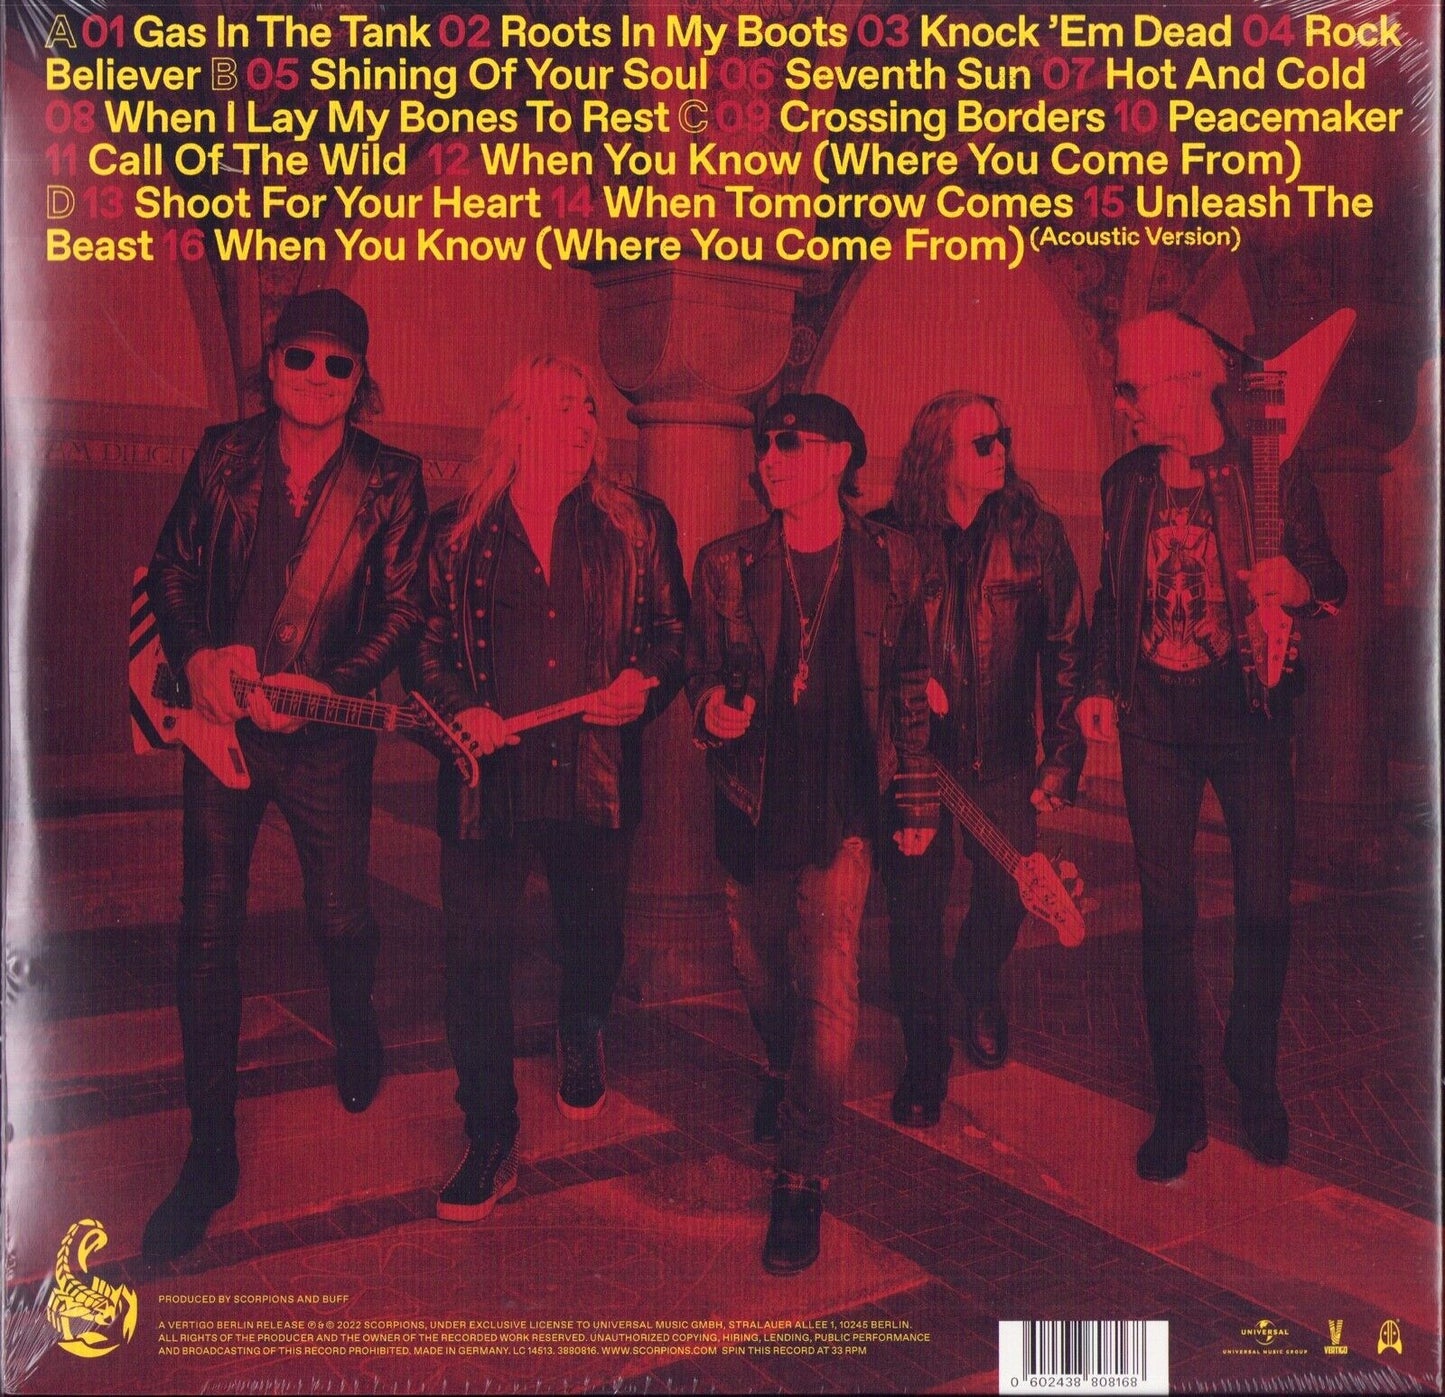 Scorpions - Rock Believer Vinyl 2LP Deluxe & Limited Edition